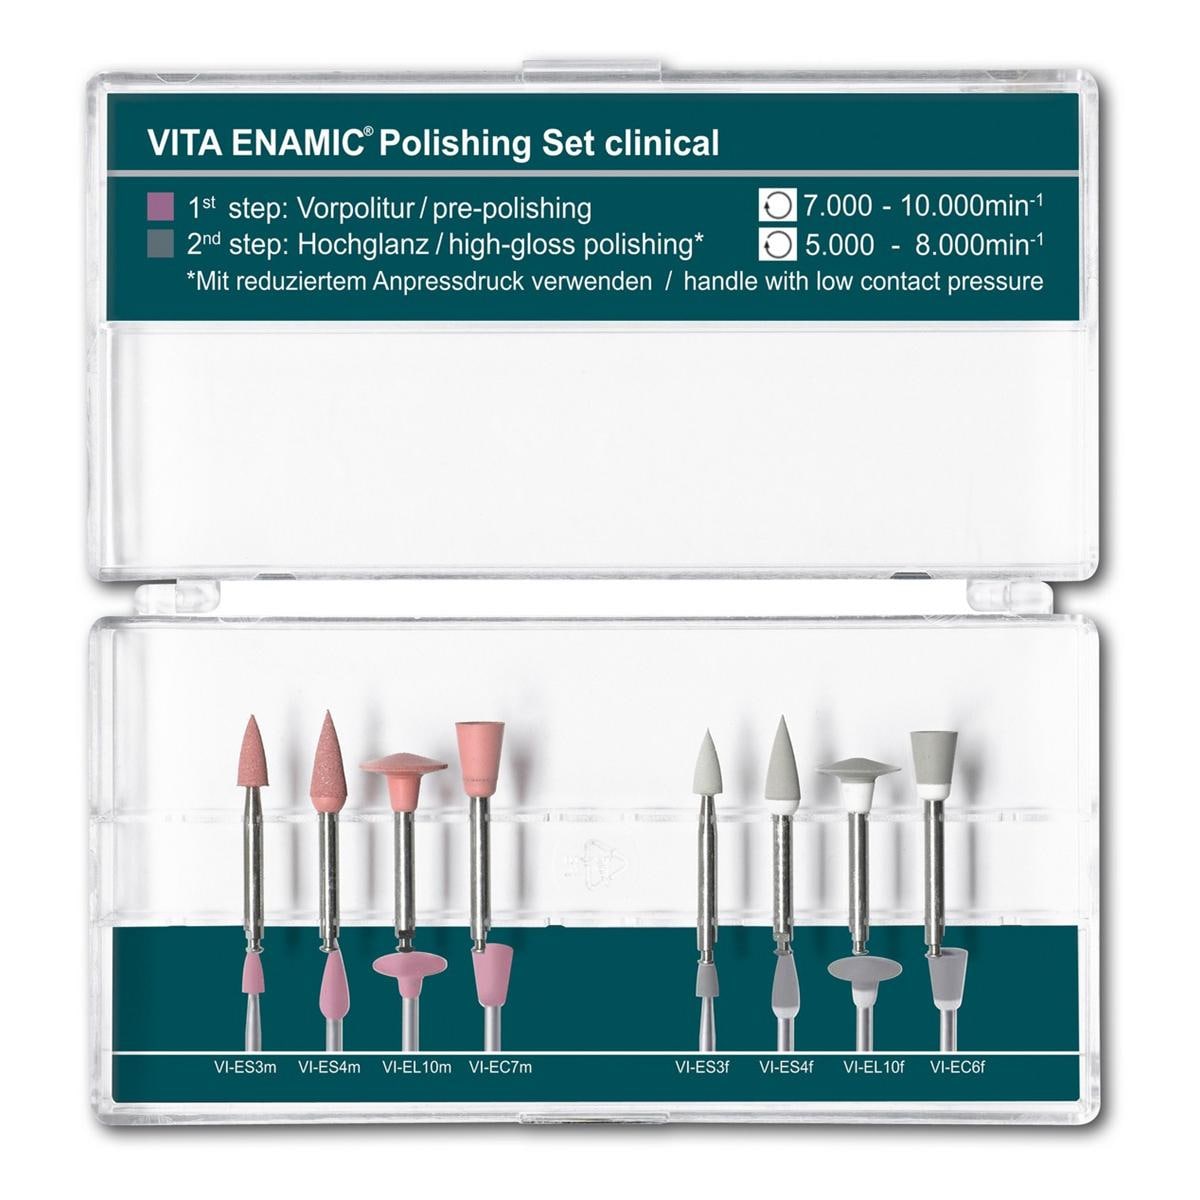 VITA Enamic Polishing Set Clinical - Assortiment, 8 pcs